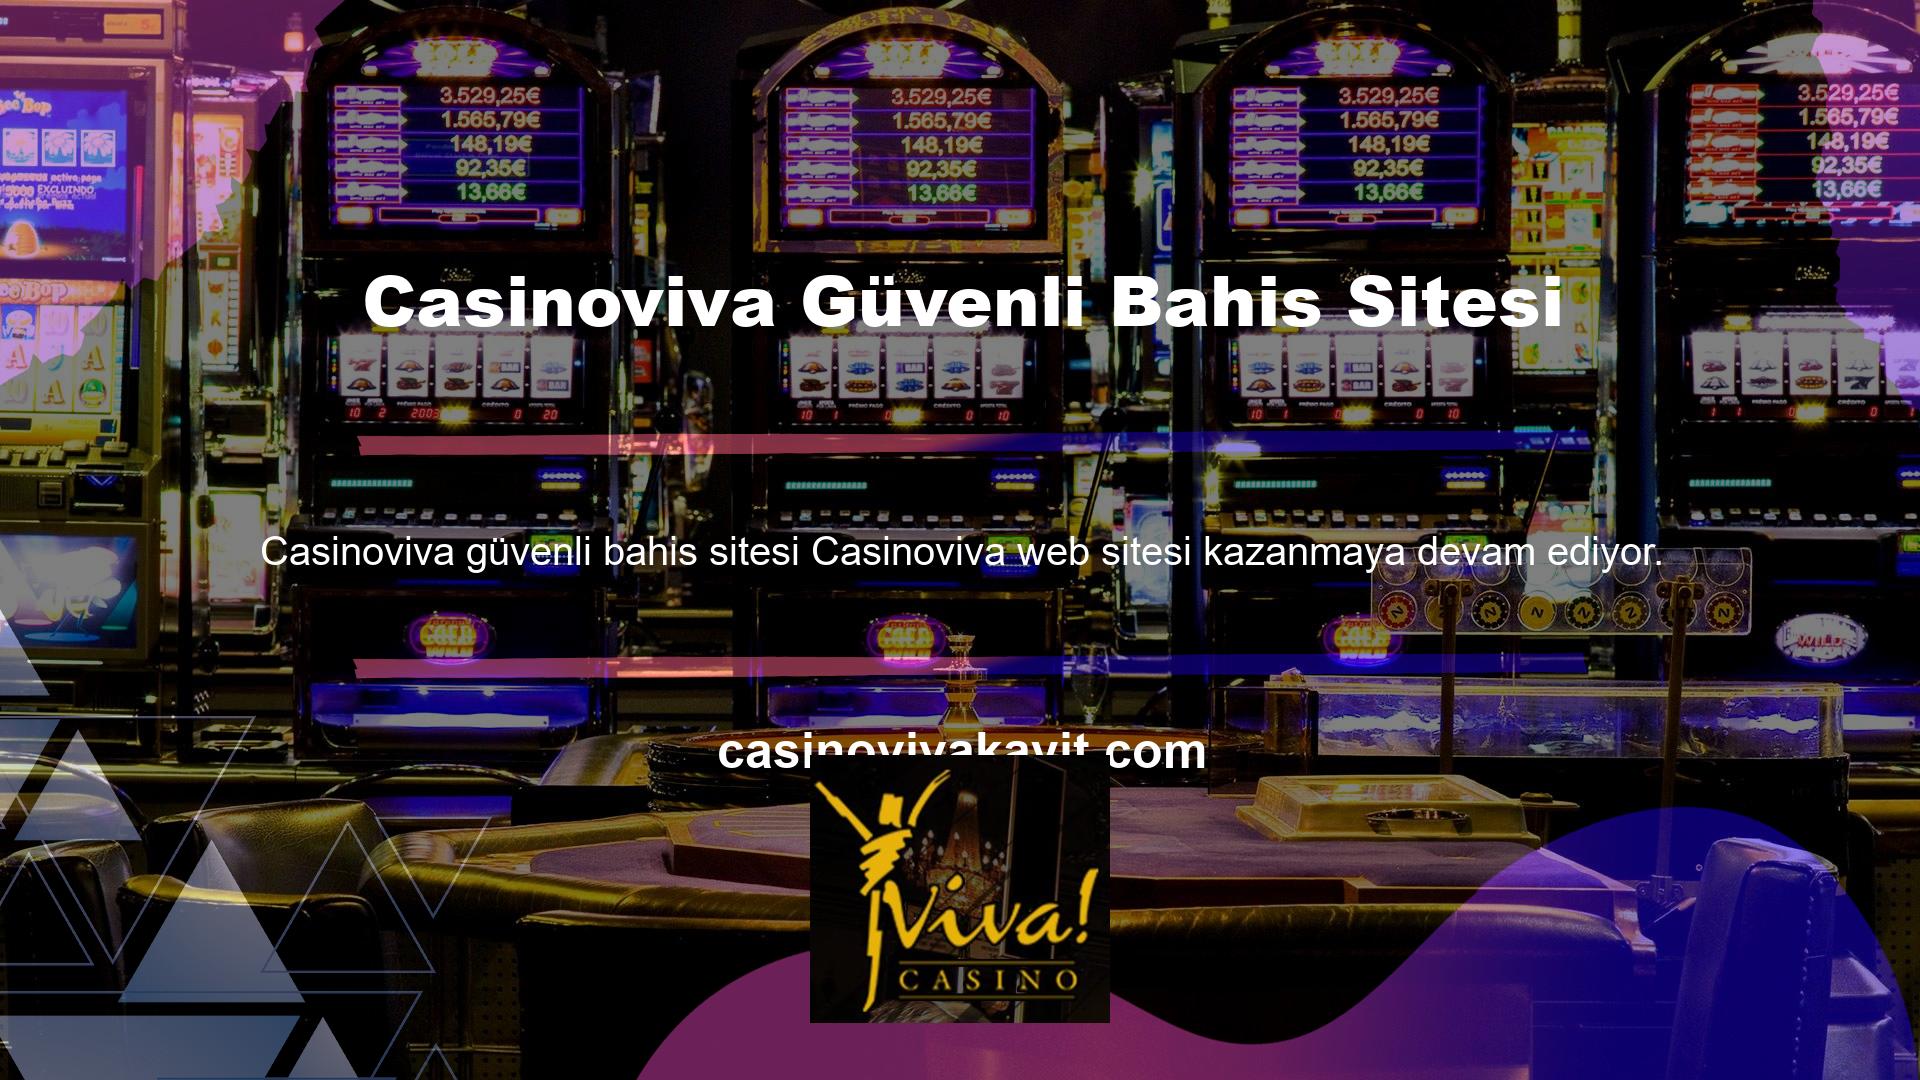 Güvenli bir bahis sitesi seçmek, bahis oynamak isteyen kişilerin sürekli bir arayışıdır ve çoğu kişi bunu Casinoviva sitesi olarak tanır